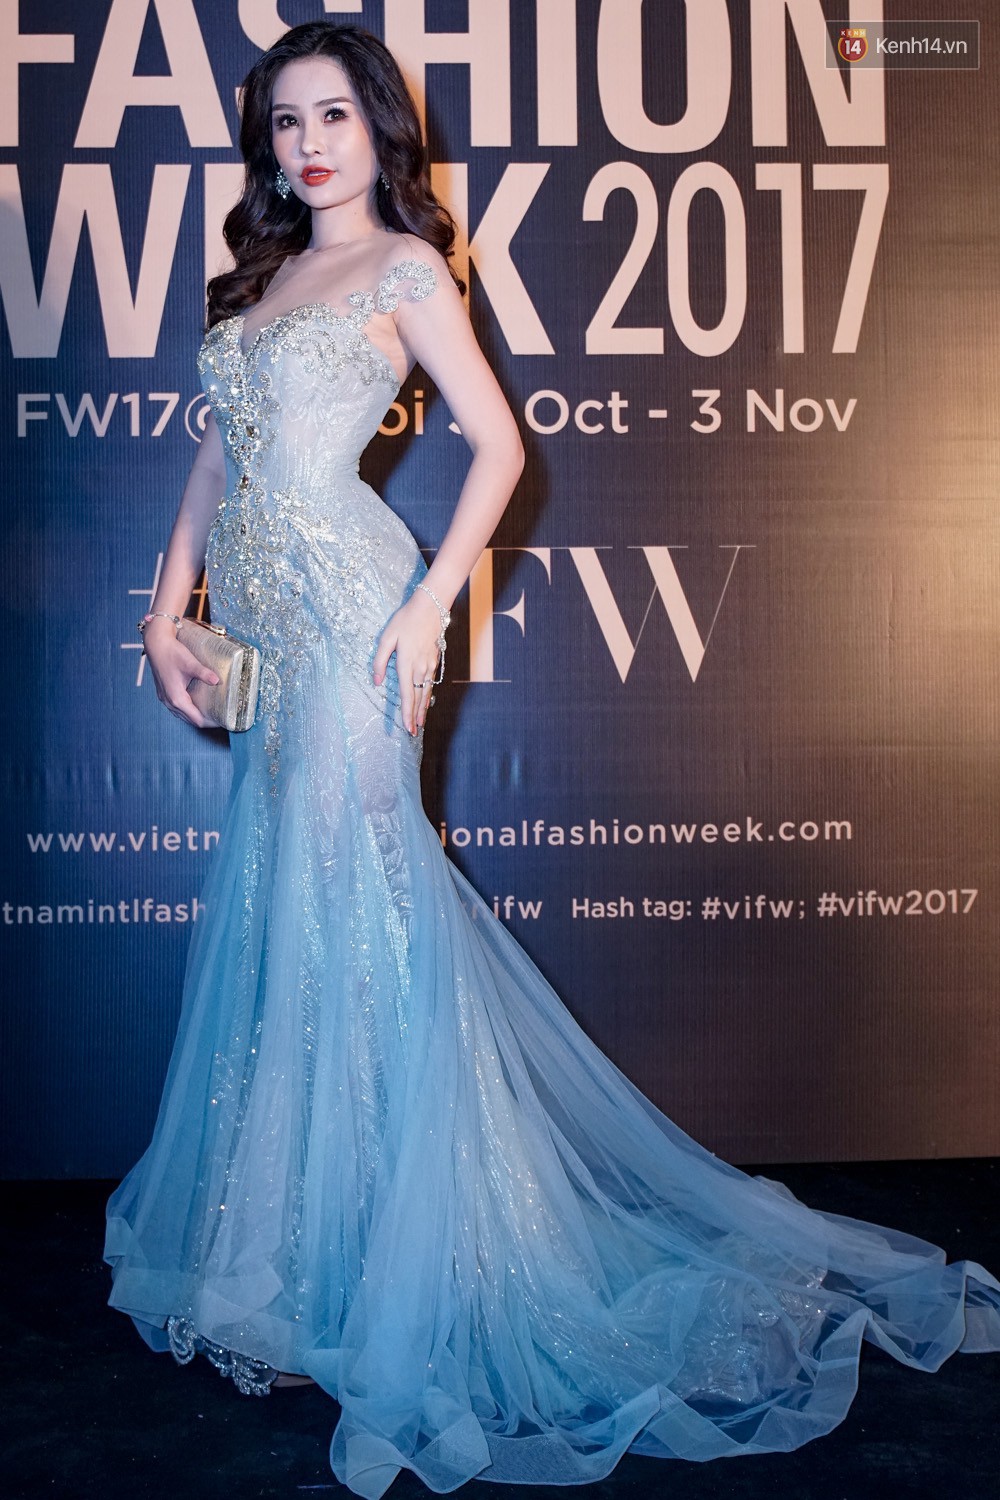 Mặc kệ nhan sắc bị ném đá dữ dội, Tân Hoa hậu Đại dương 2017 vẫn tự tin lộ diện giữa sự kiện - Ảnh 2.